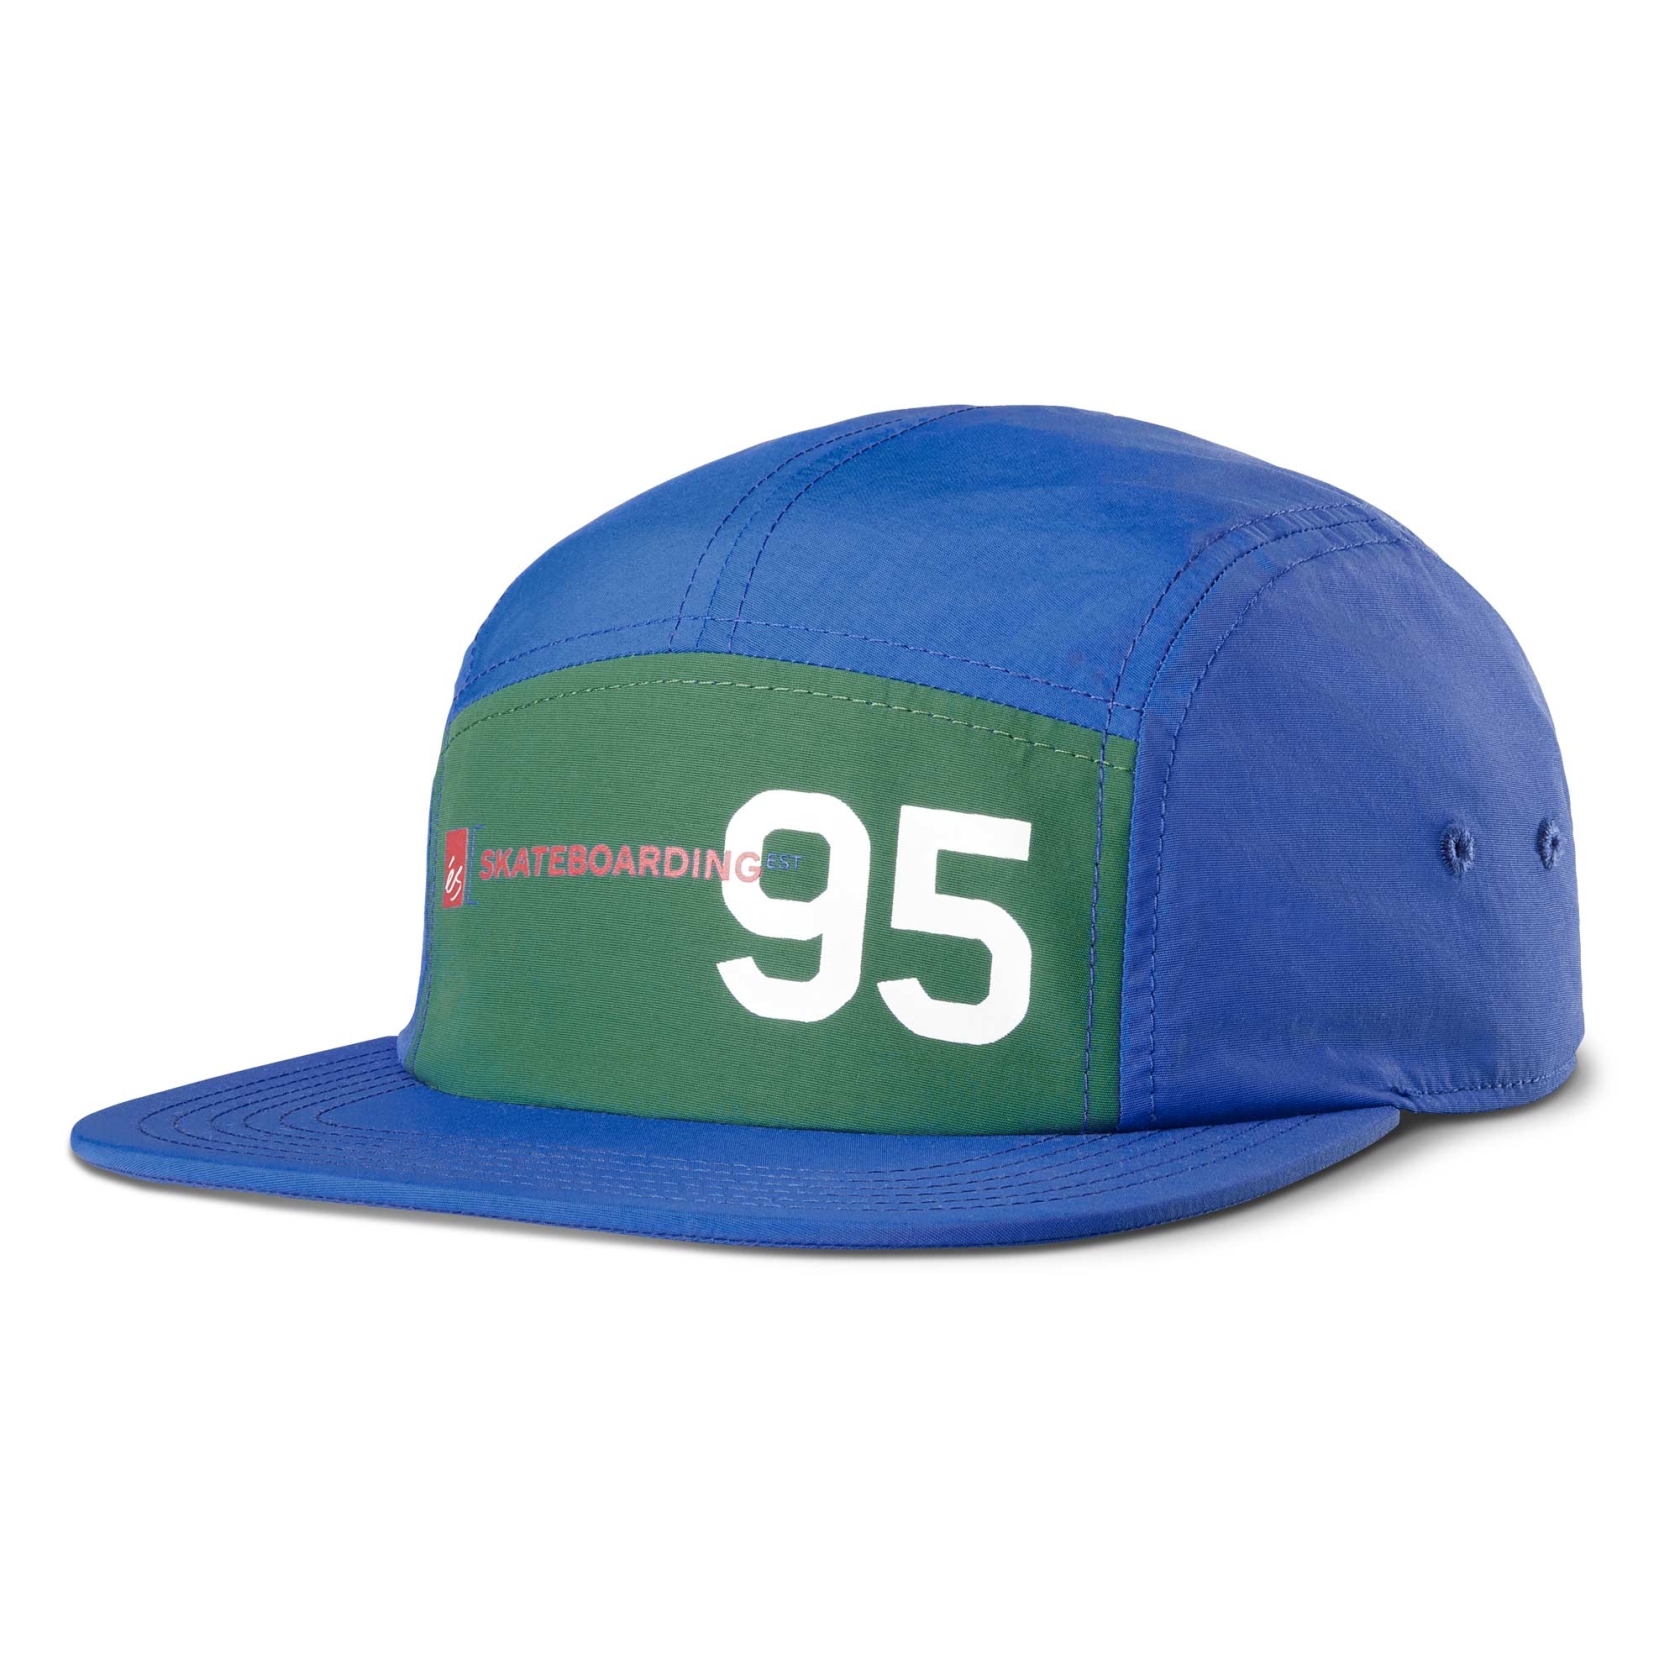 eS SKB Cap 95 CAMPER hat, blue/green